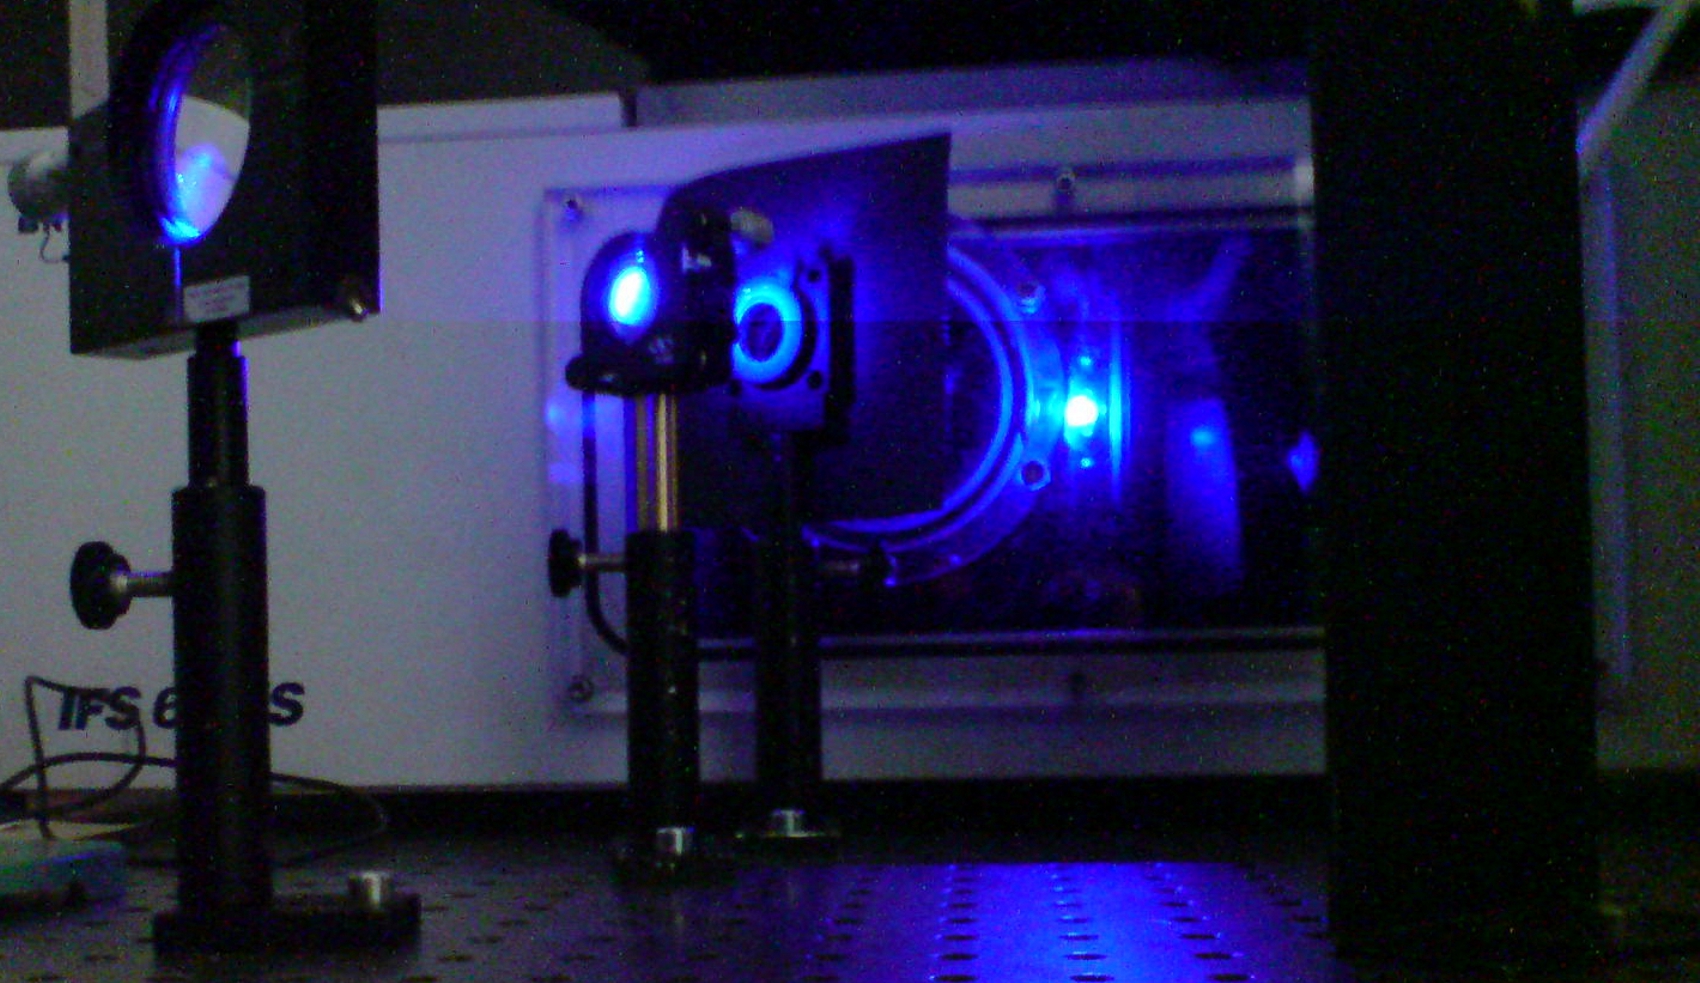 Laser spot on infrared spectrometer